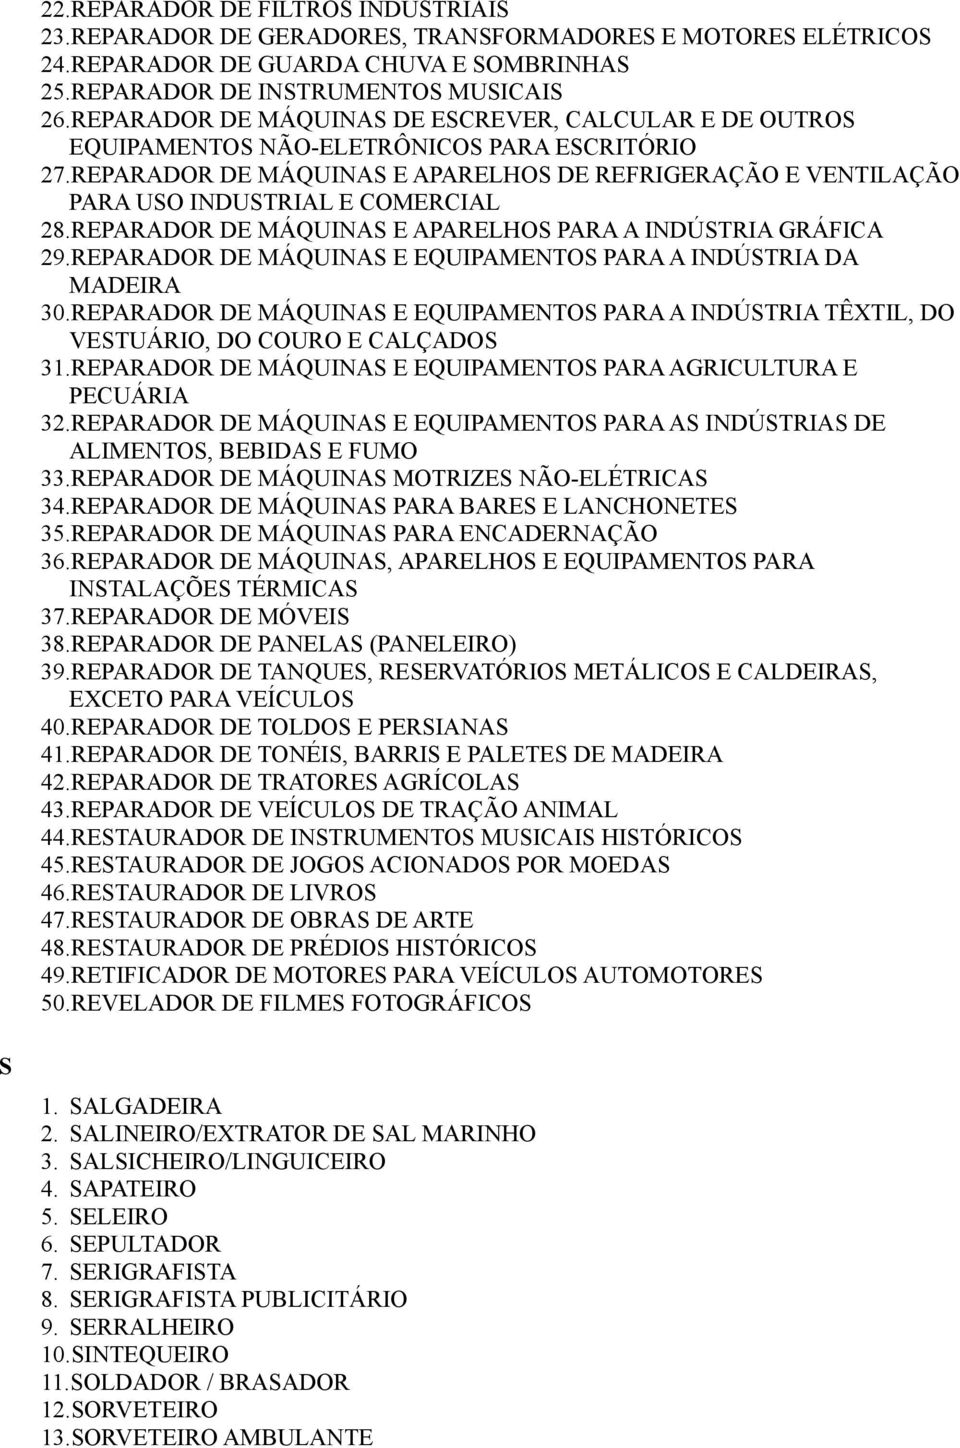 REPARADOR DE MÁQUINAS E APARELHOS DE REFRIGERAÇÃO E VENTILAÇÃO PARA USO INDUSTRIAL E COMERCIAL 28.REPARADOR DE MÁQUINAS E APARELHOS PARA A INDÚSTRIA GRÁFICA 29.